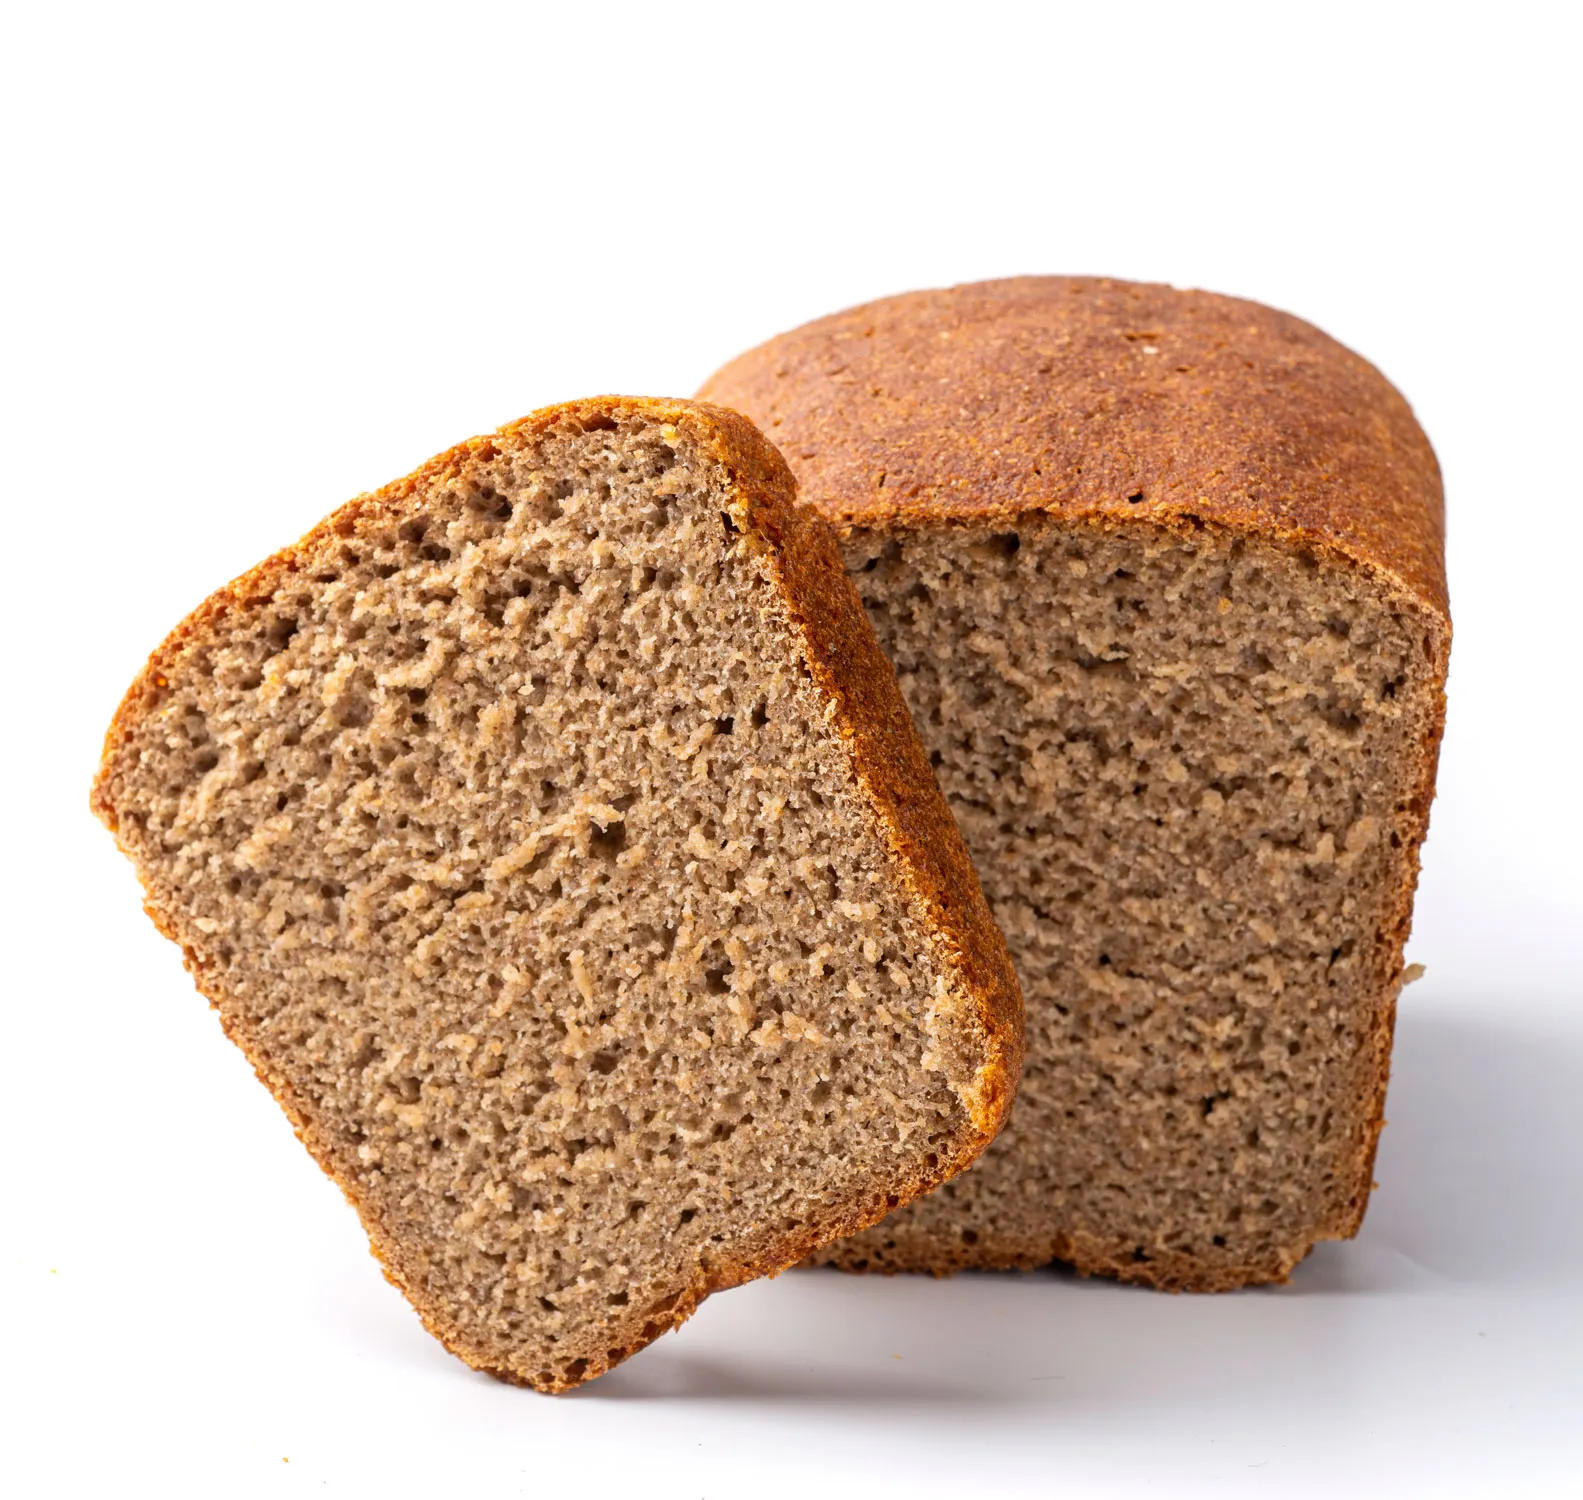 Ржаной хлеб в магазине. Ржано-пшеничный хлеб с отрубями. Черный хлеб. Черный ржаной хлеб. Хлеб Житный.